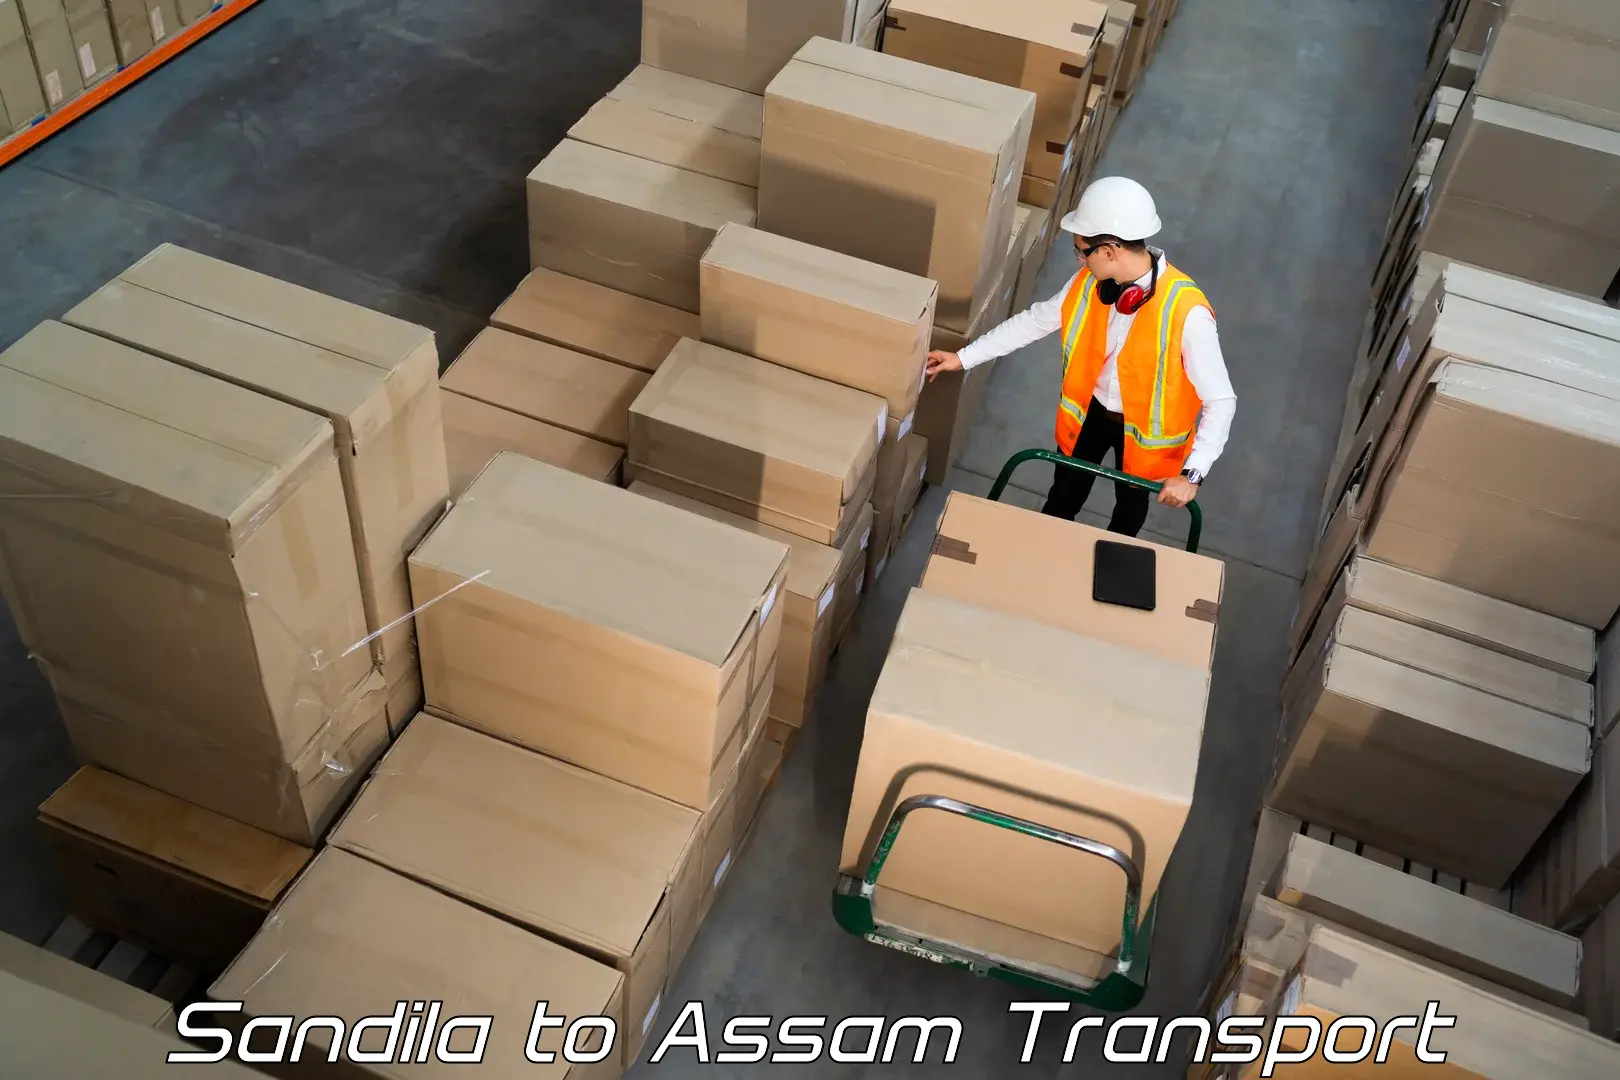 Daily parcel service transport Sandila to Assam